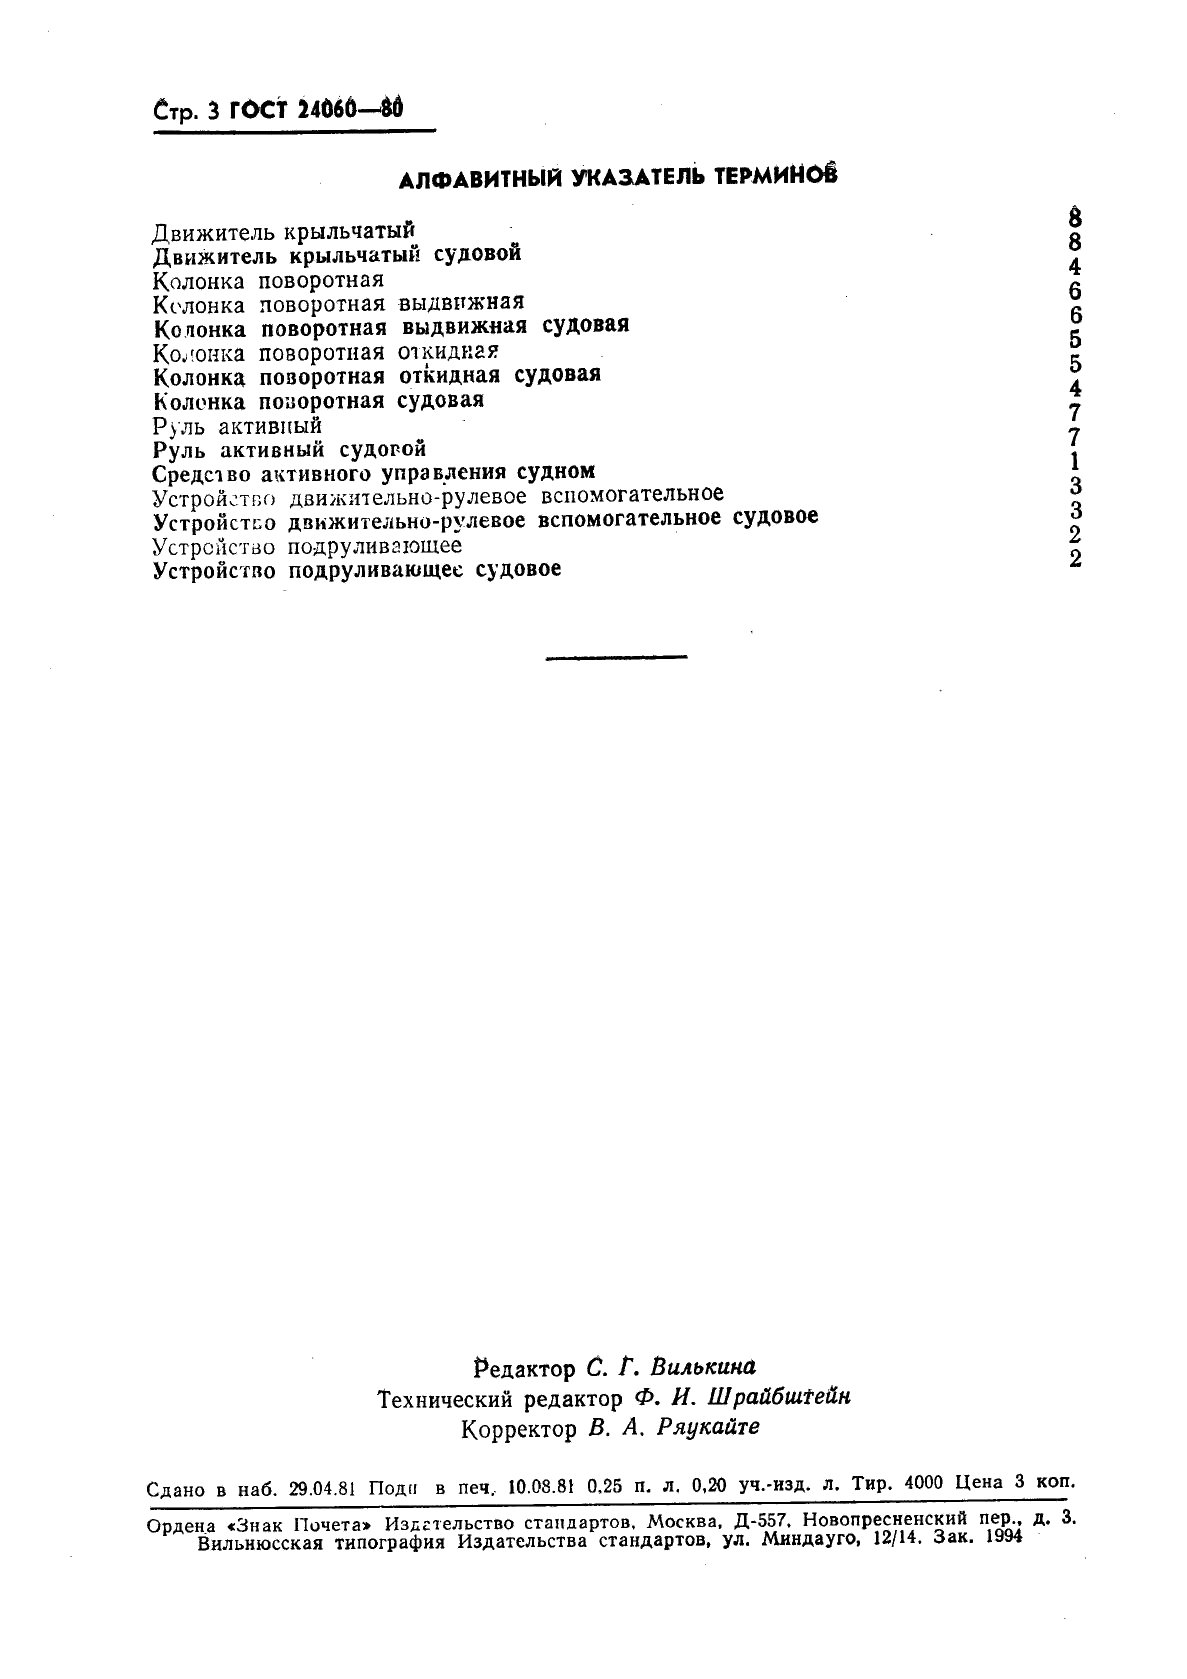 ГОСТ 24060-80 Средства активного управления судами. Термины и определения (фото 4 из 4)